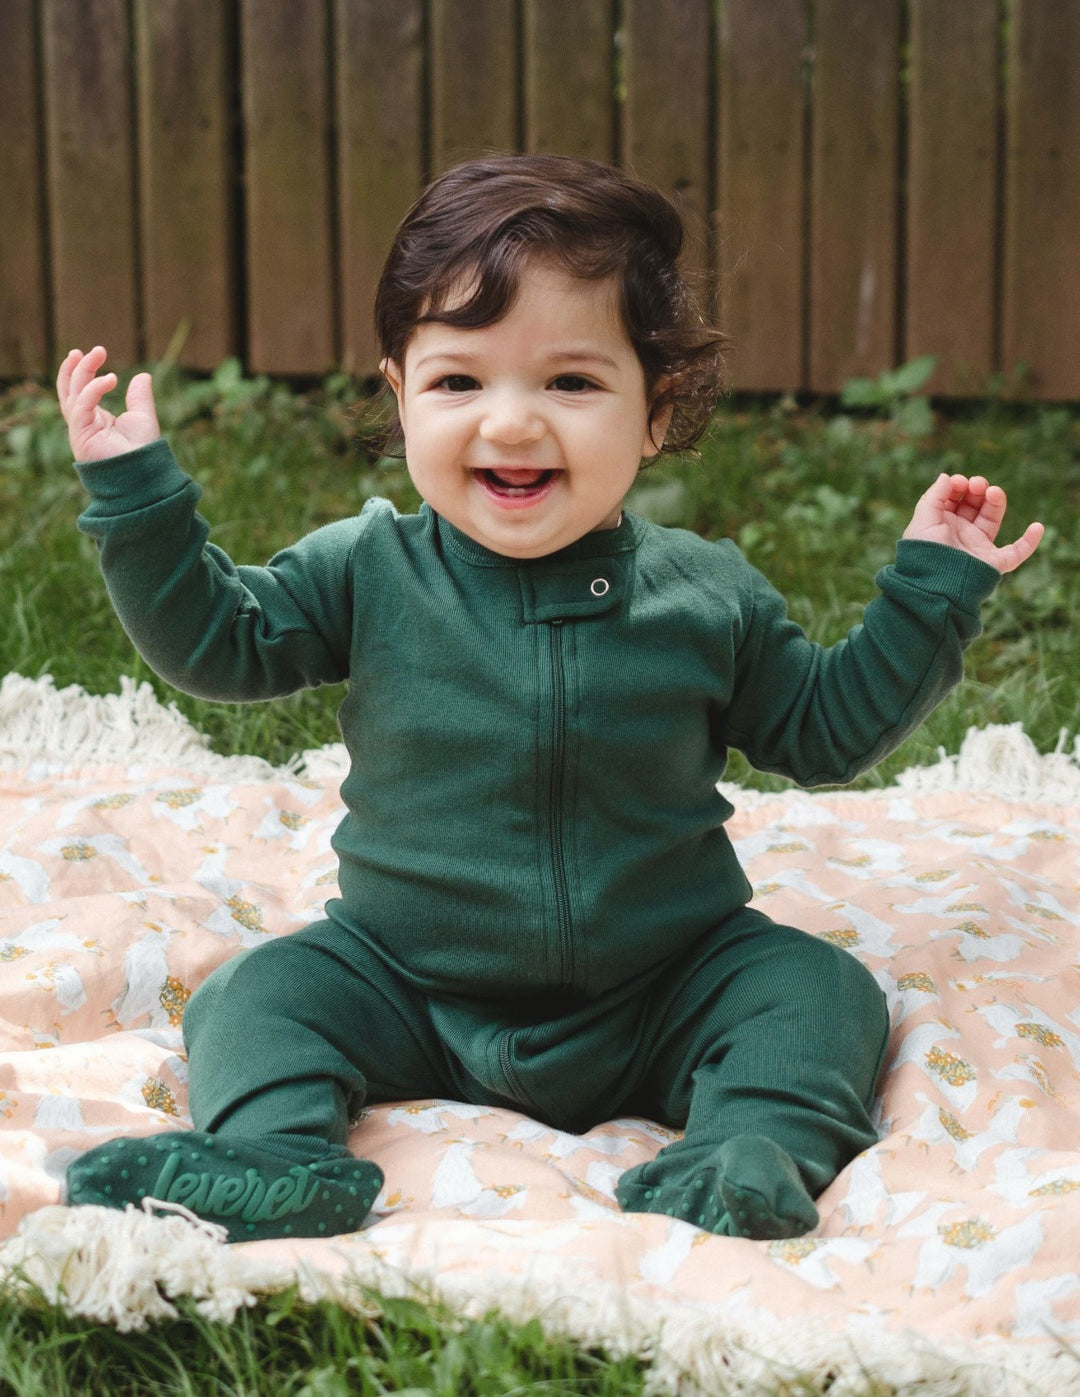 solid color dark green baby footed pajamas